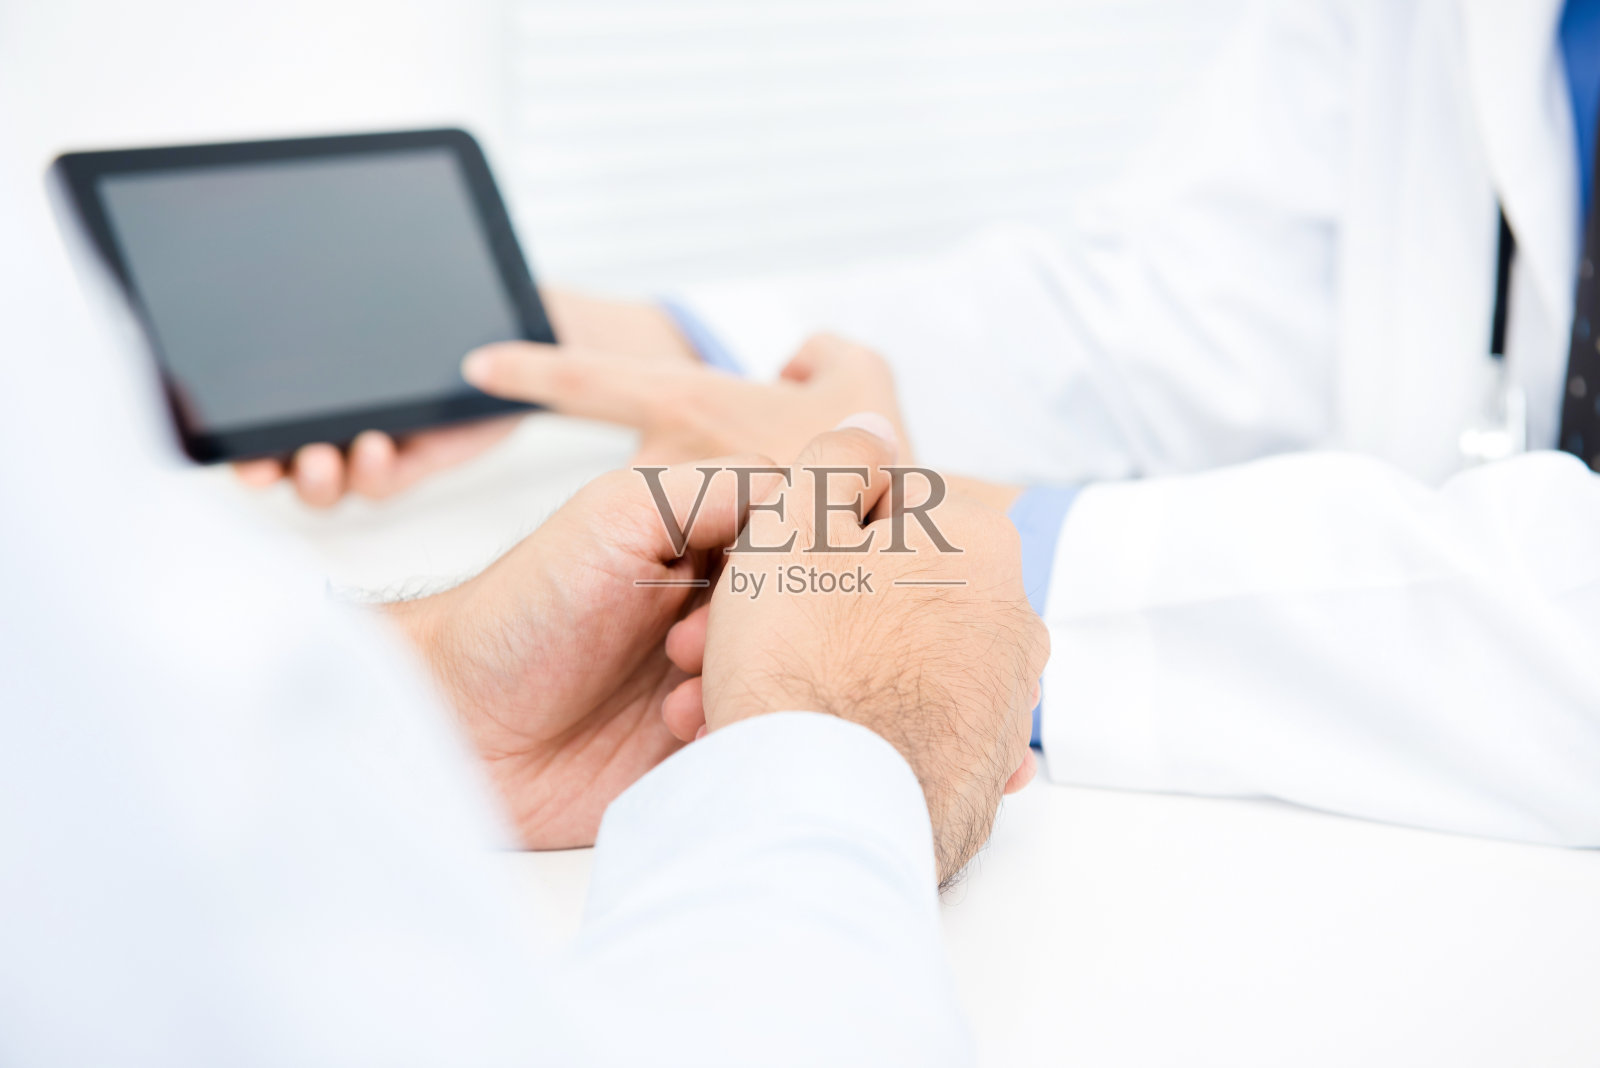 医生用平板电脑向男性患者讲解治疗方法照片摄影图片